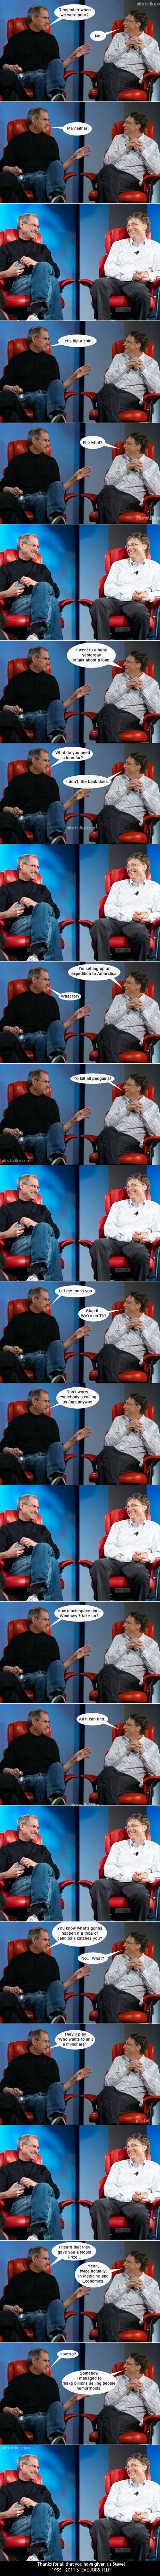 More Steve Jobs, Bill Gates humor